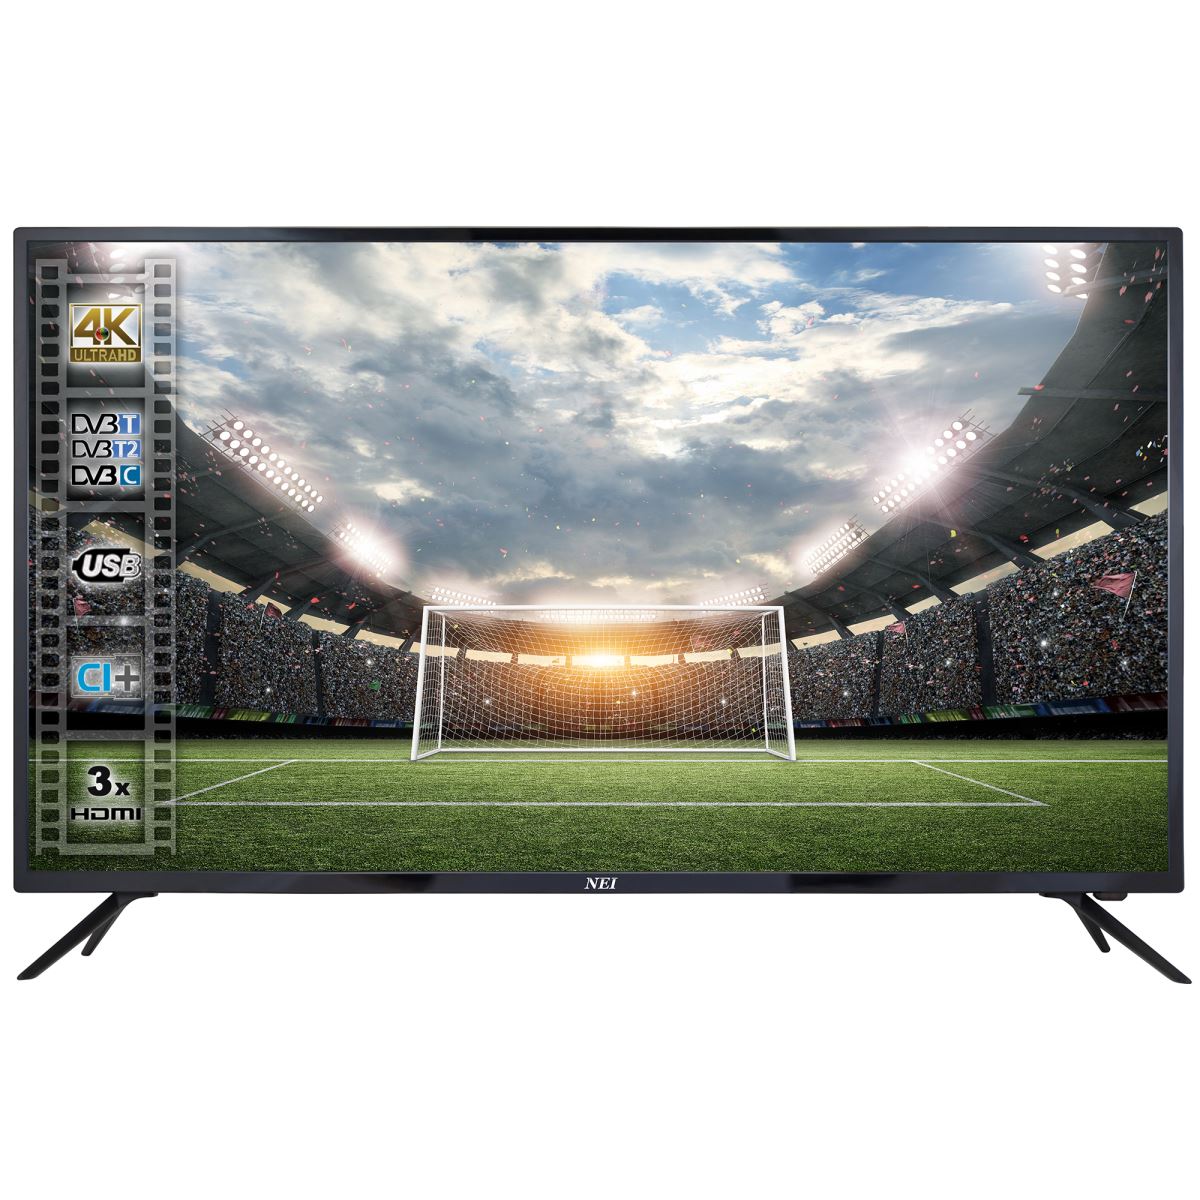 Televizor LED NEI 65NE6000, 164 cm, 4K Ultra HD, Slot CI+, Negru